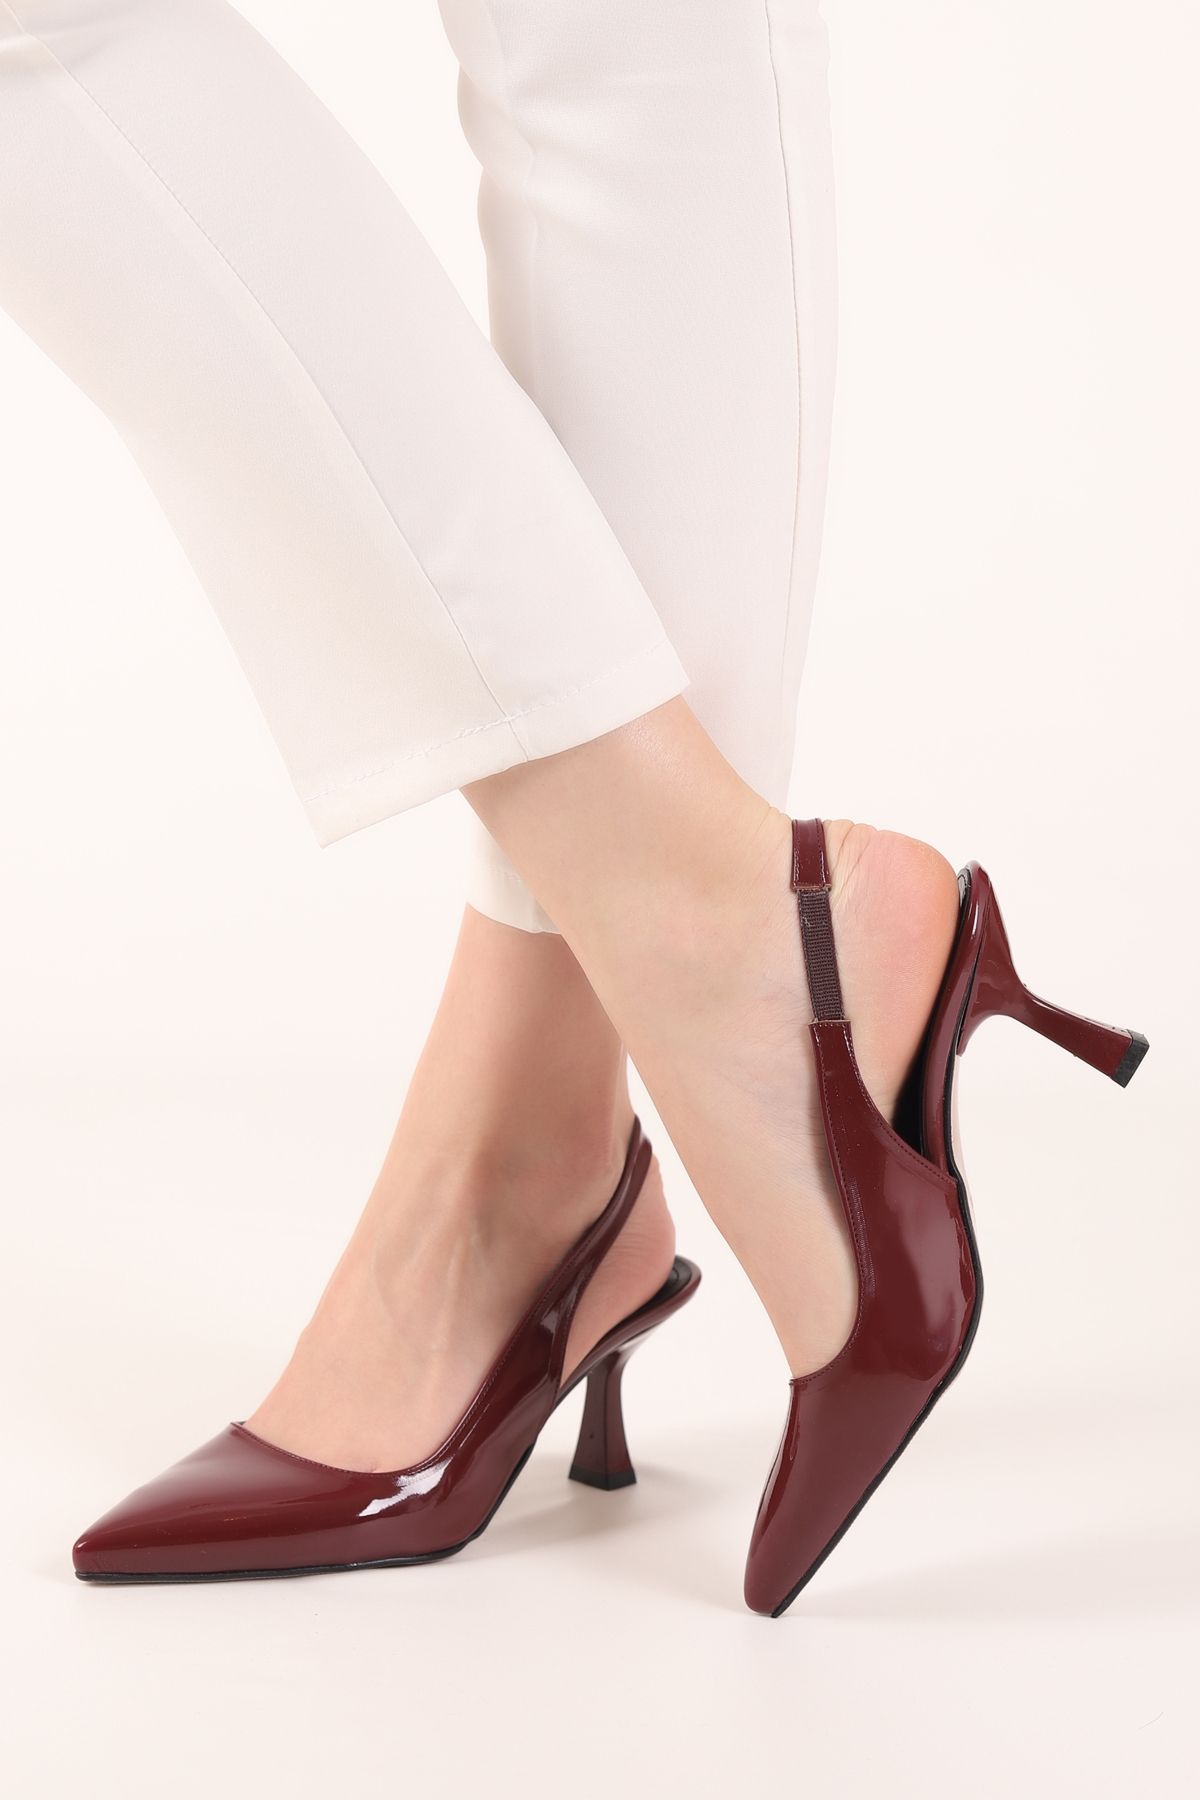 Shedax Kadın Stiletto Arkası Açık Bordo Rugan Tam Kalıp 7 Cm Topuklu Ayakkabı